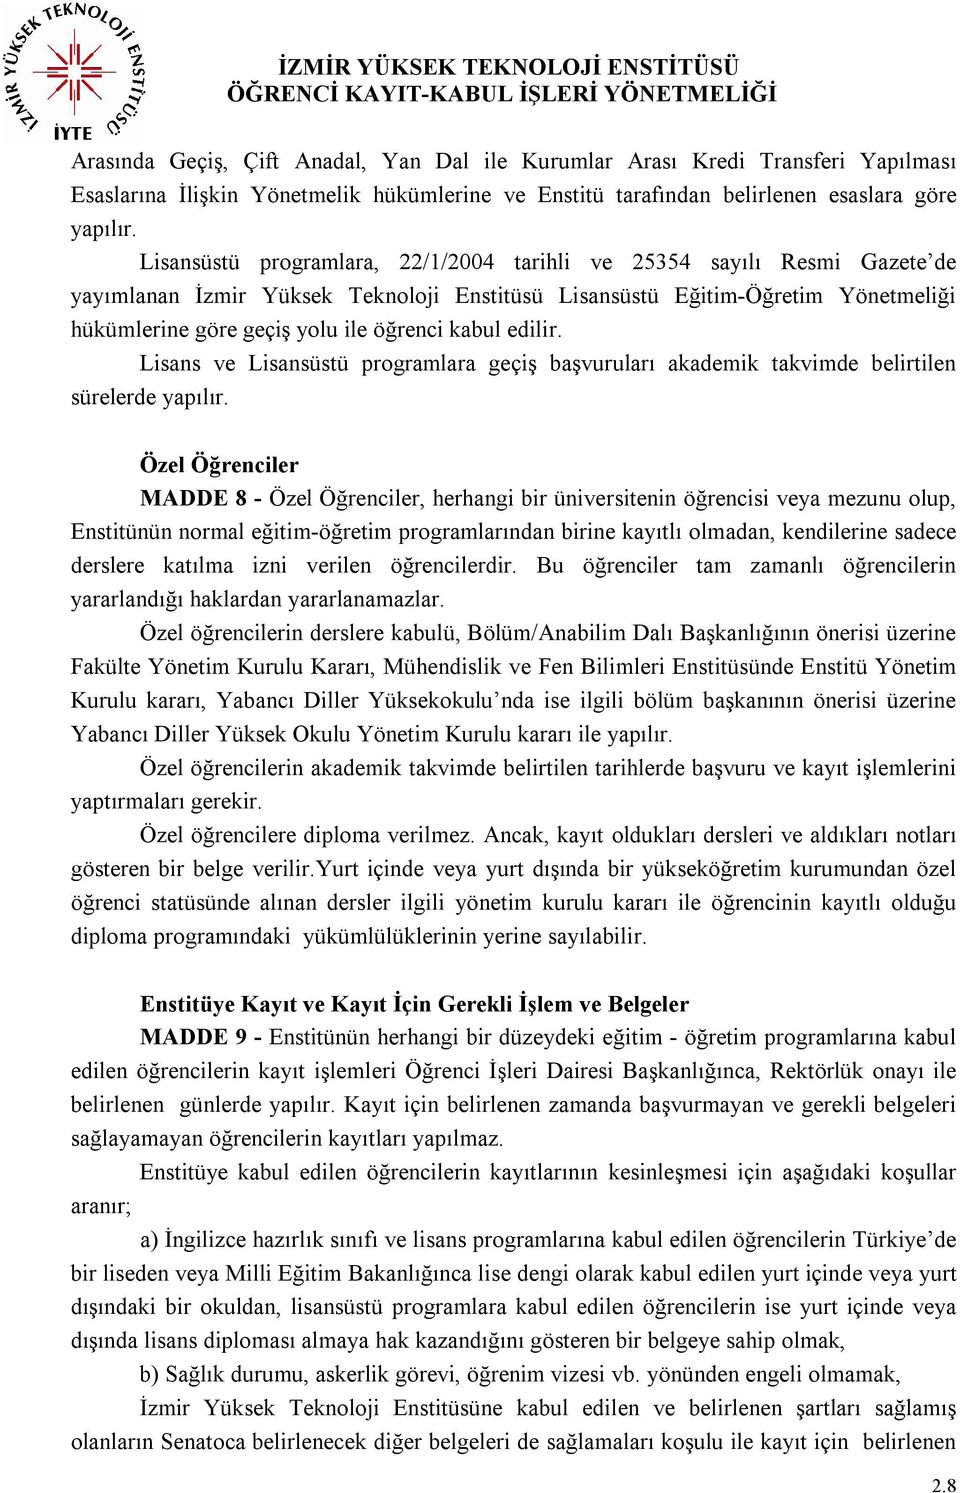 Lisansüstü programlara, 22/1/2004 tarihli ve 25354 sayılı Resmi Gazete de yayımlanan İzmir Yüksek Teknoloji Enstitüsü Lisansüstü Eğitim-Öğretim Yönetmeliği hükümlerine göre geçiş yolu ile öğrenci